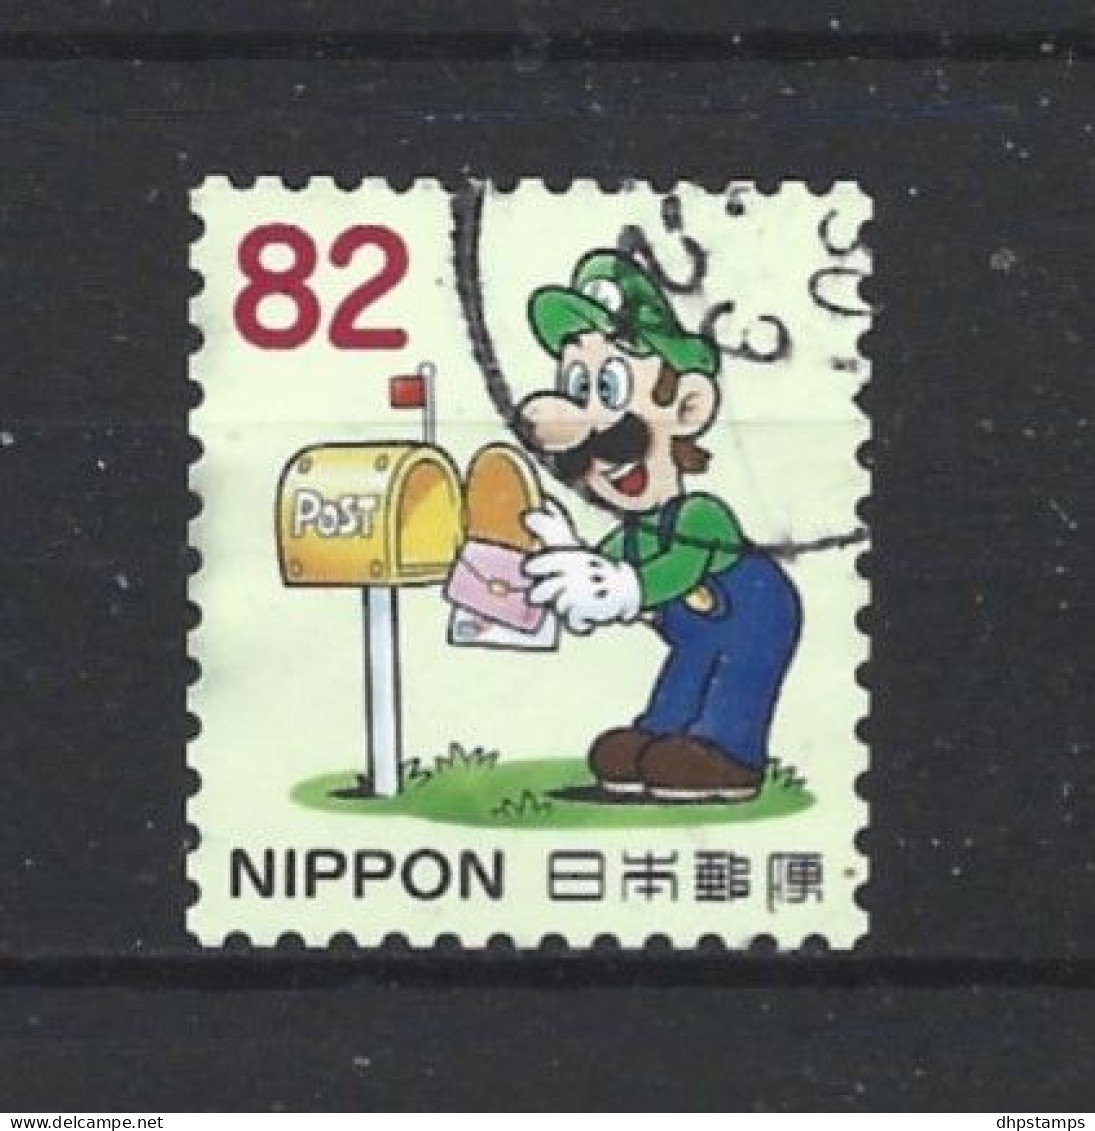 Japan 2017 Super Mario Y.T. 8228 (0) - Oblitérés